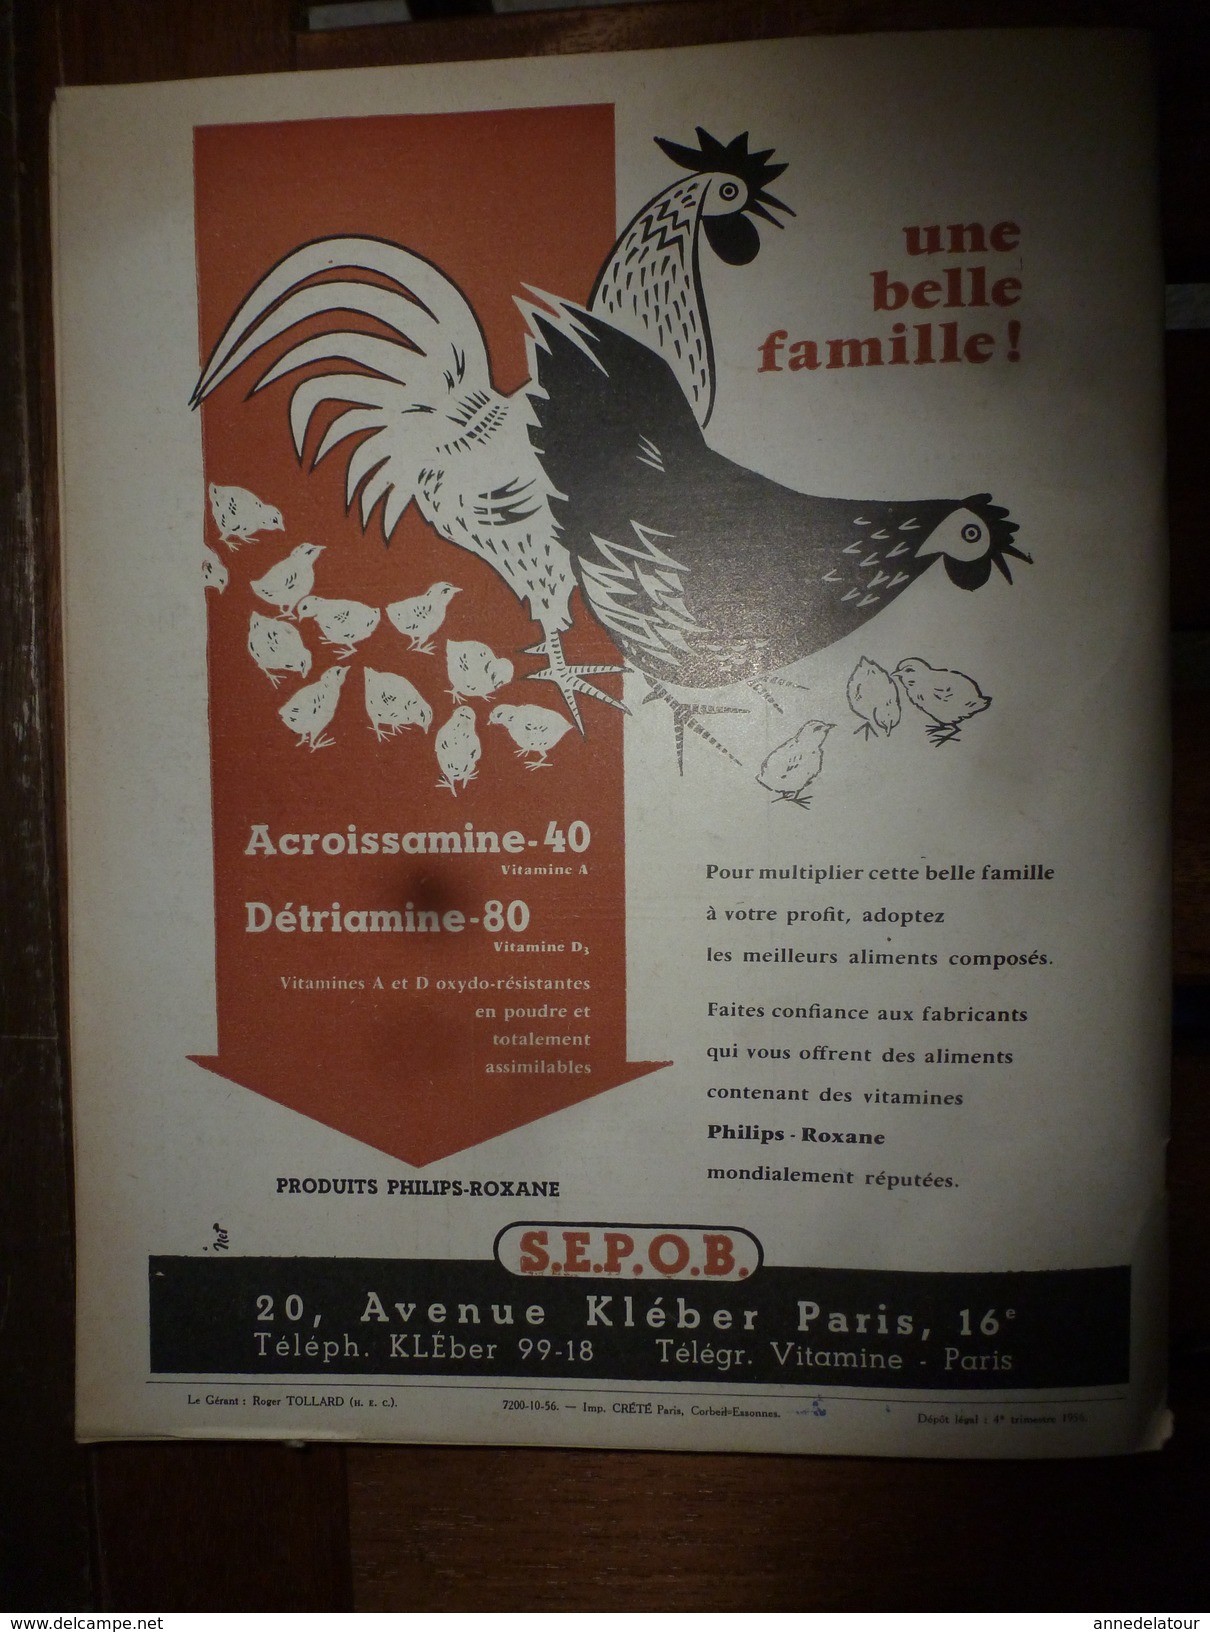 1956 LRDLE La Chasse; Croisement Du Zébu Au Maroc;Concours Des Espèces Chevalines;Aviculture En Belgique;etc - Animales